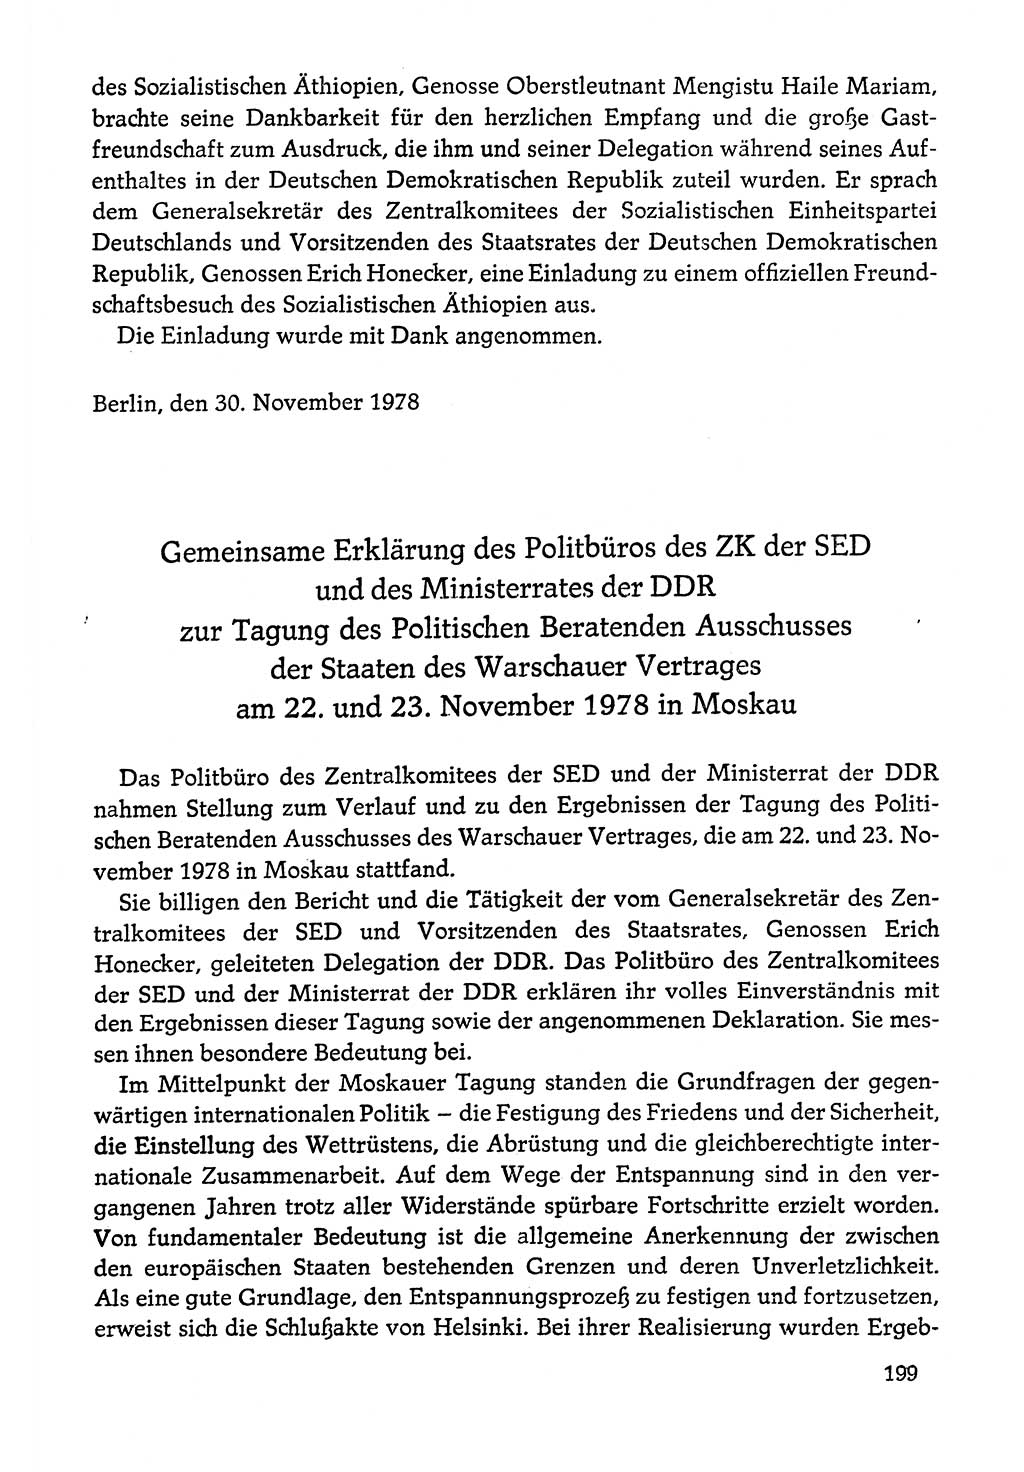 Dokumente der Sozialistischen Einheitspartei Deutschlands (SED) [Deutsche Demokratische Republik (DDR)] 1978-1979, Seite 199 (Dok. SED DDR 1978-1979, S. 199)